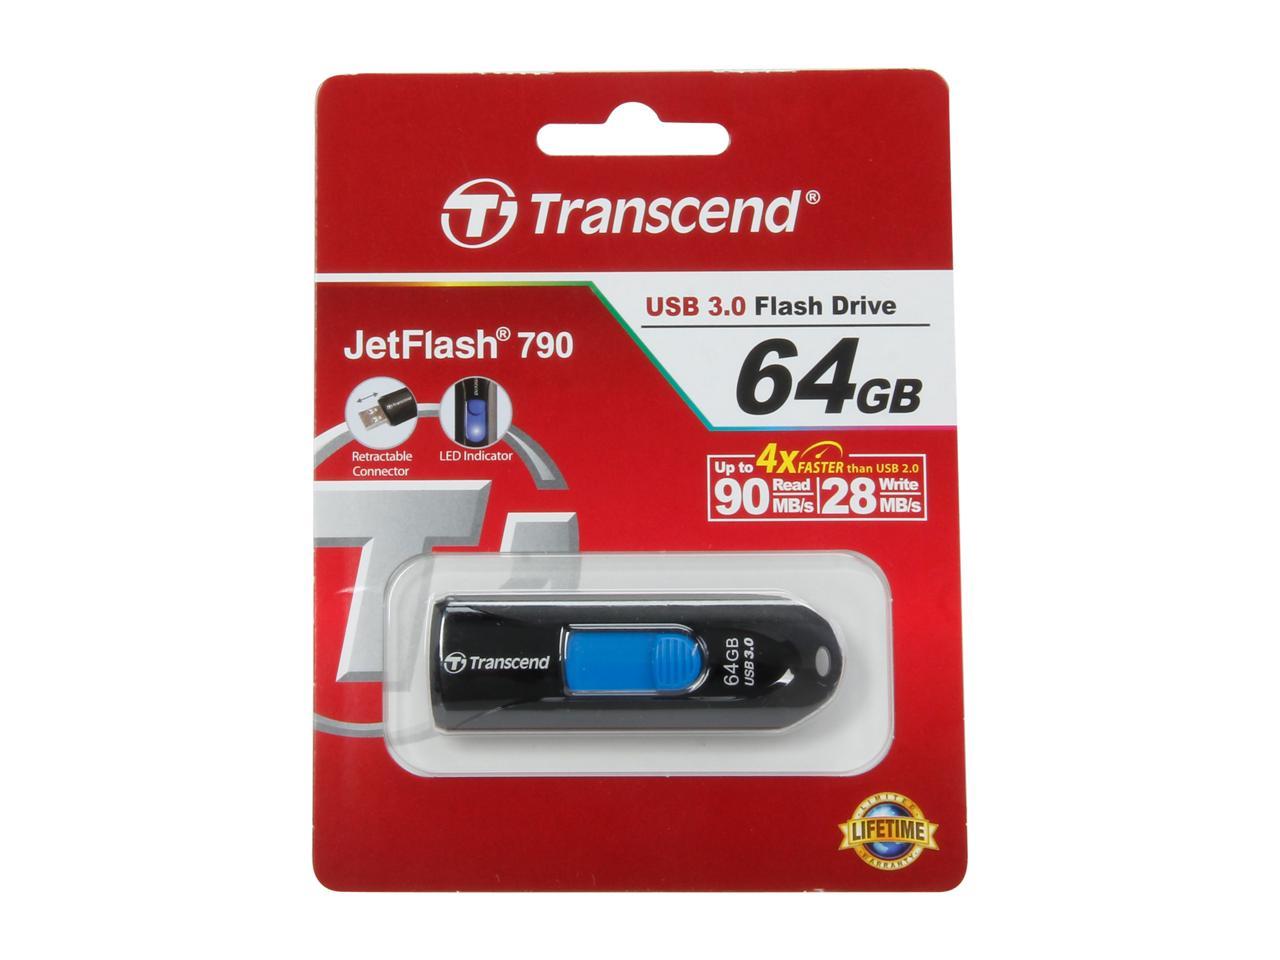 Transcend JetFlash 790 64GB USB 3.0 Flash Drive Model TS64GJF790K